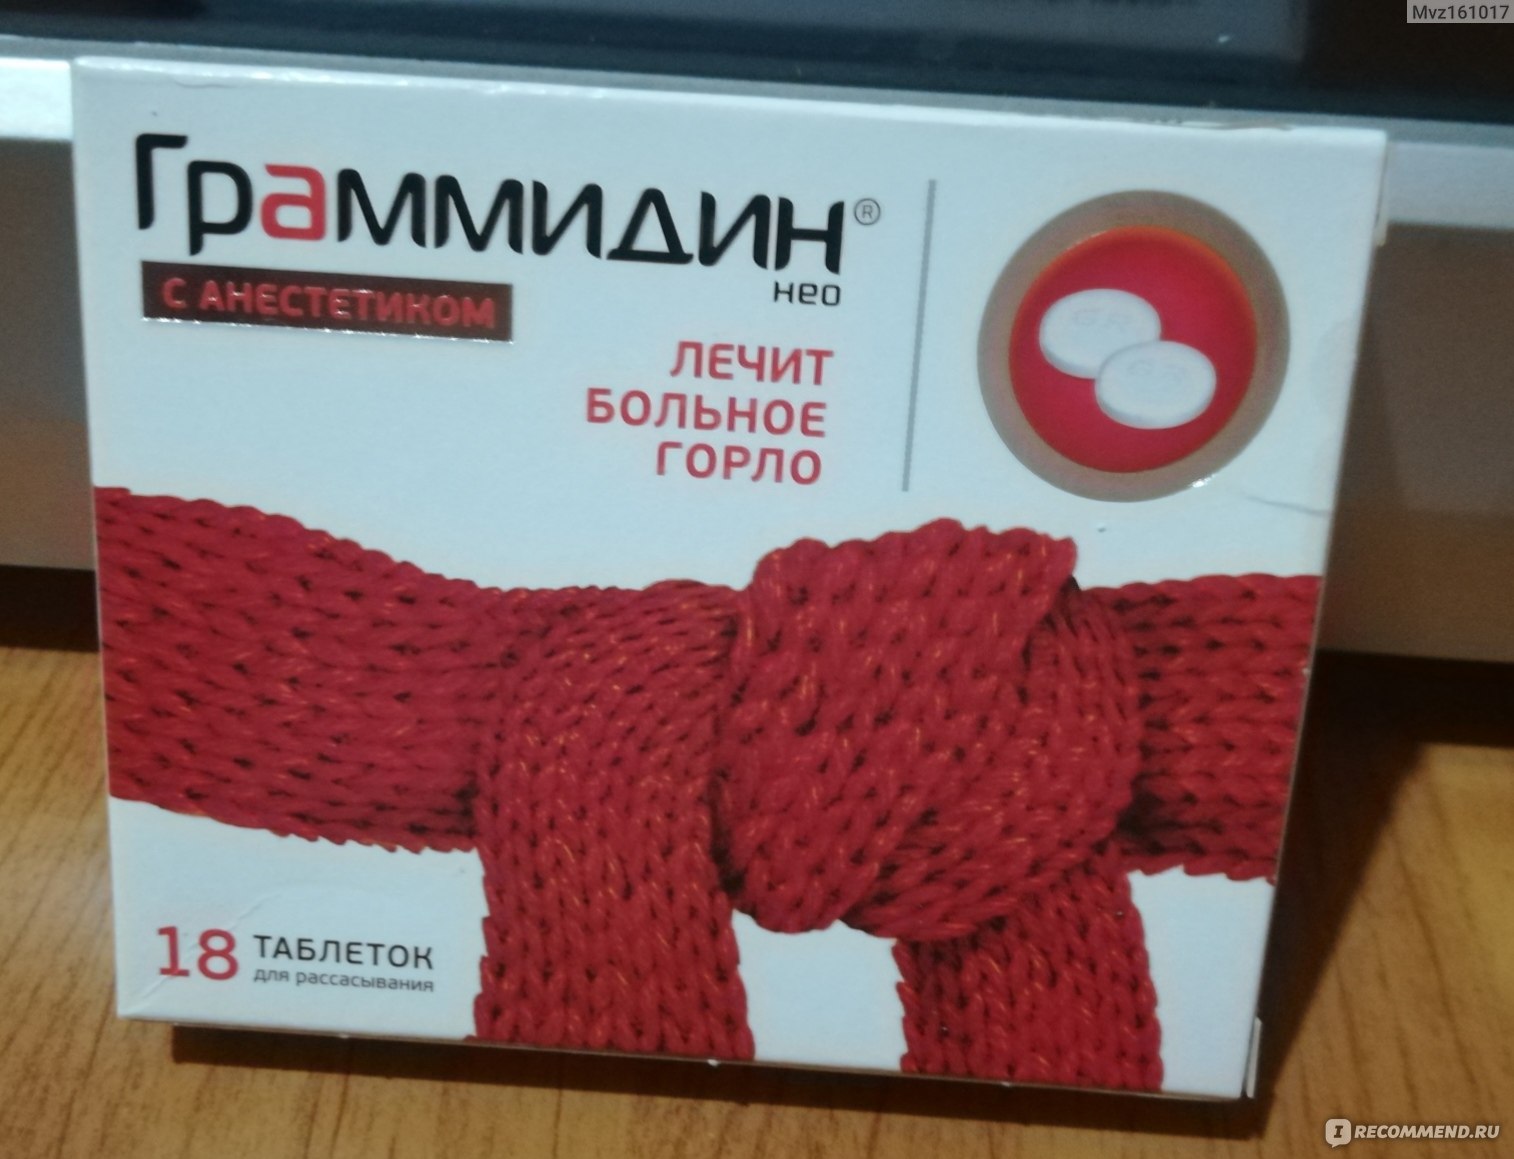 Граммидин Нео с красным шарфиком